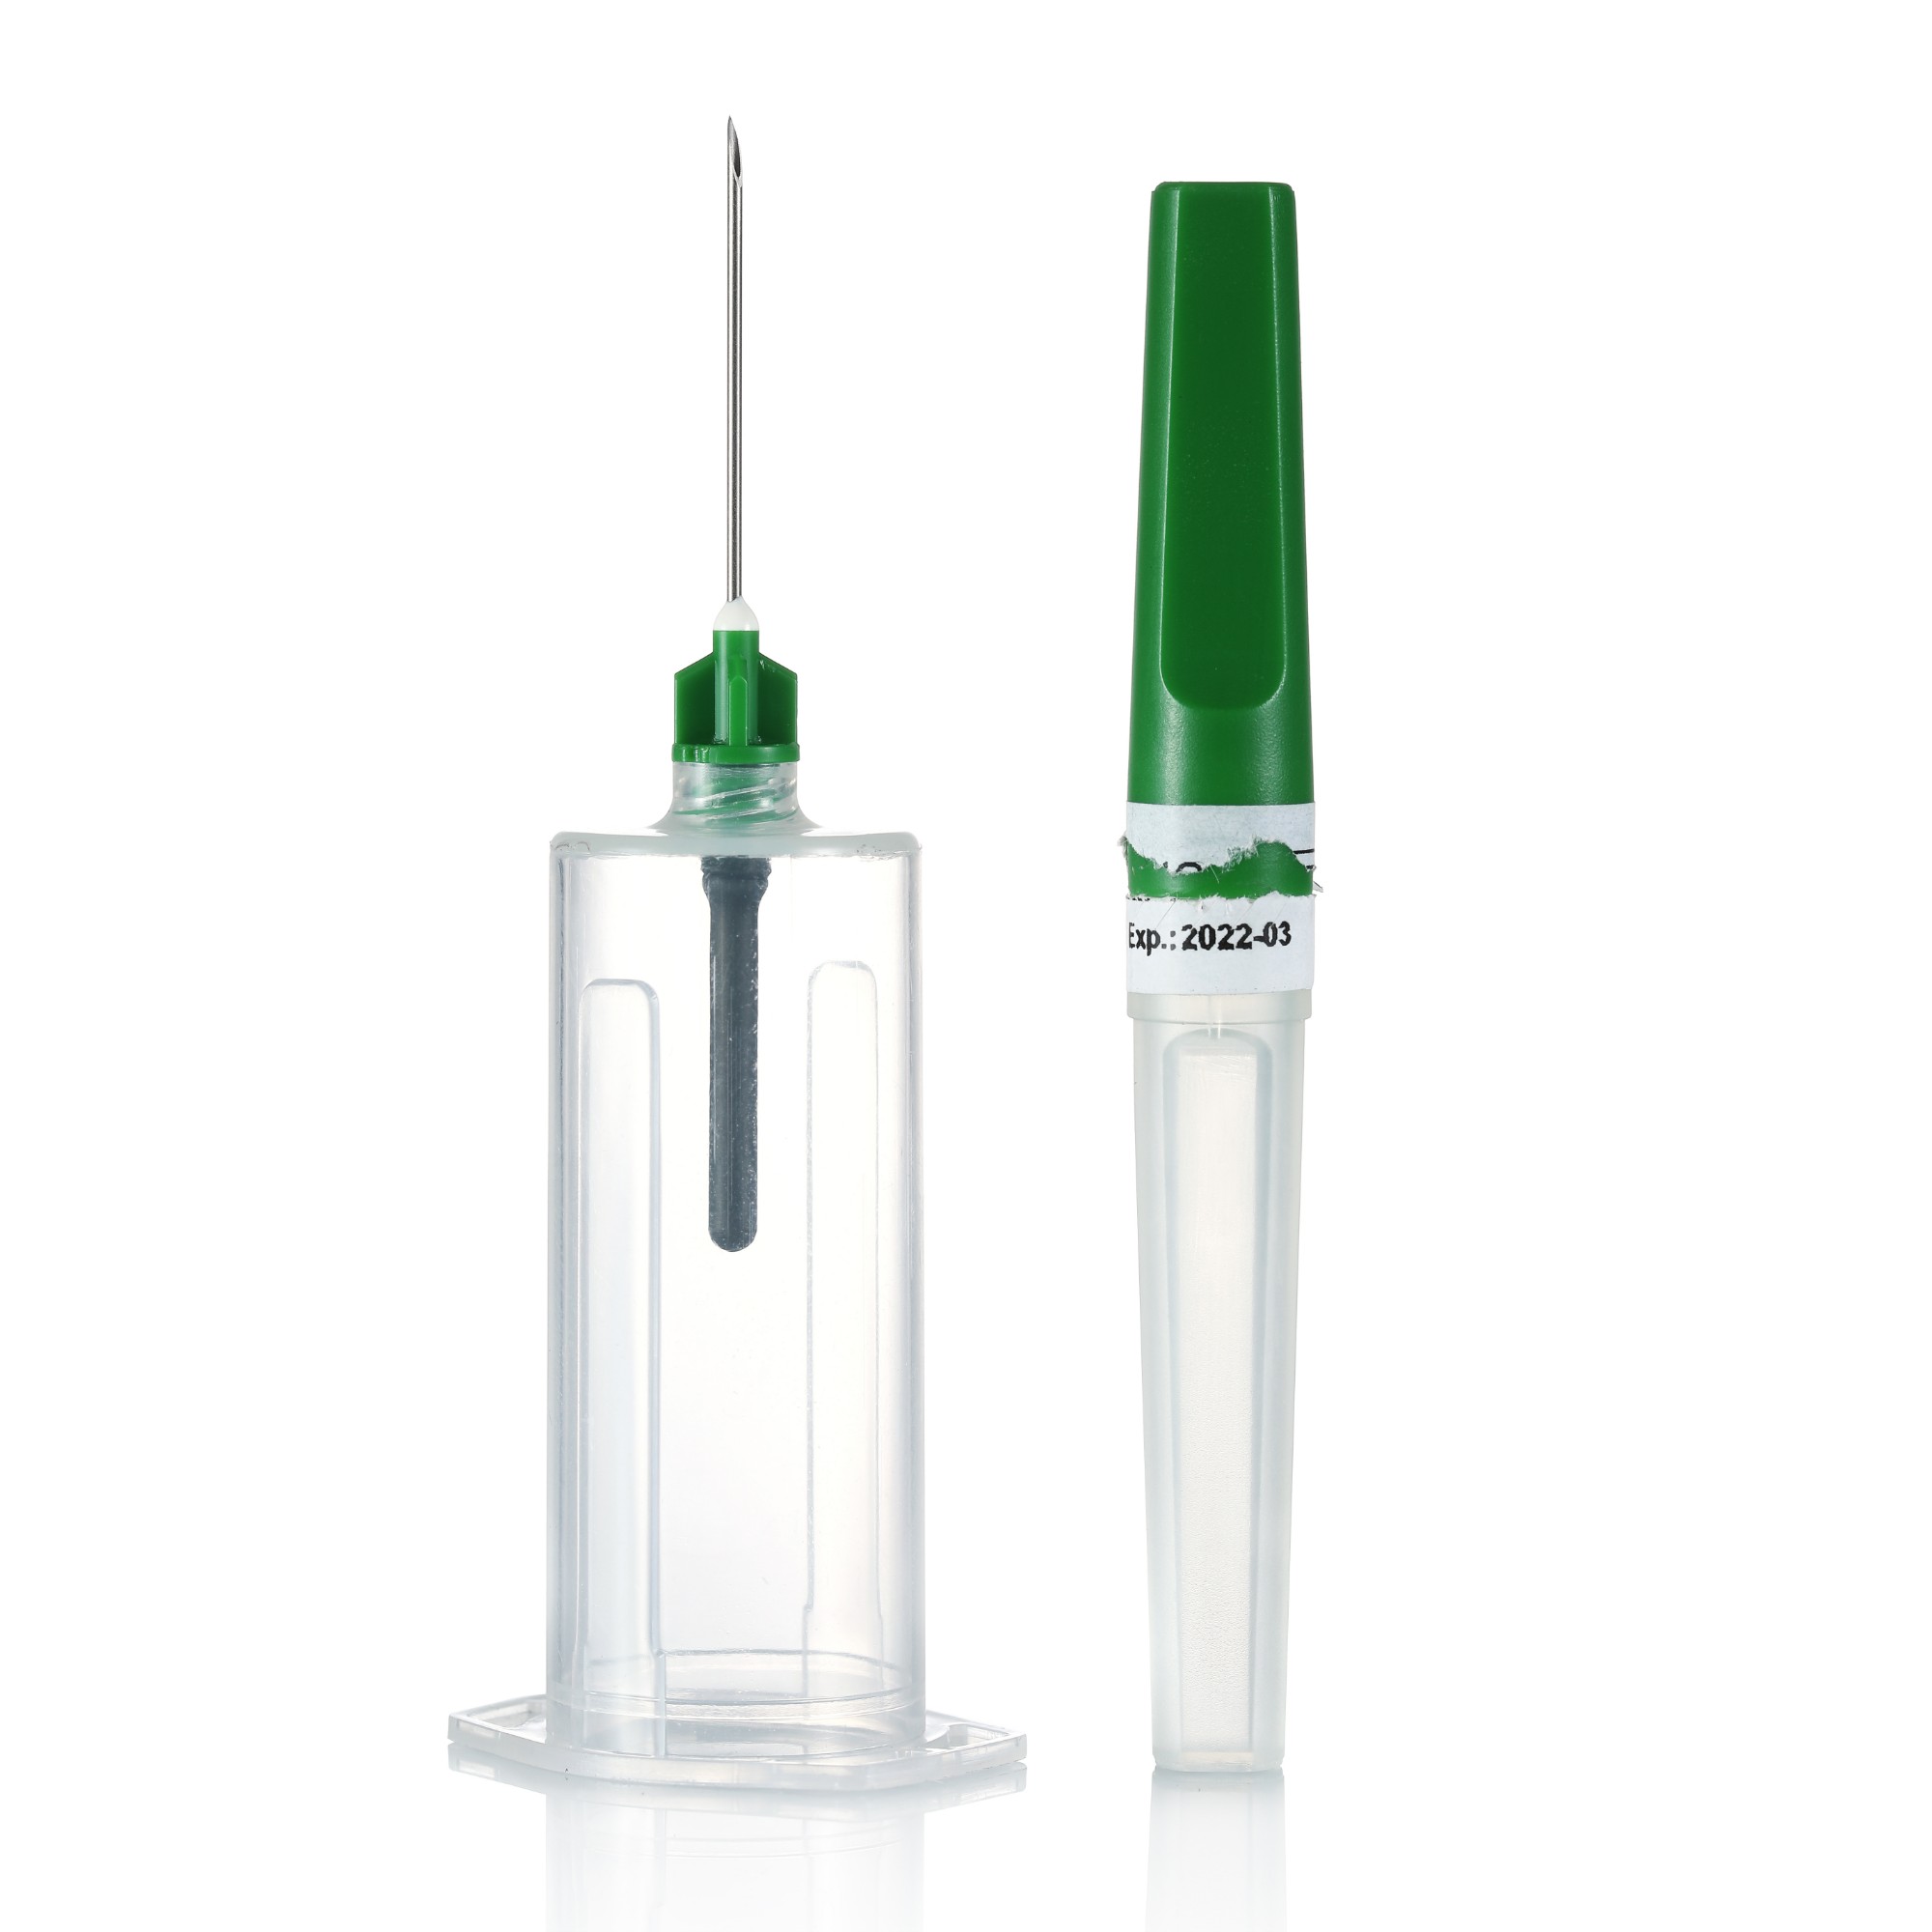 Multi-sample needle